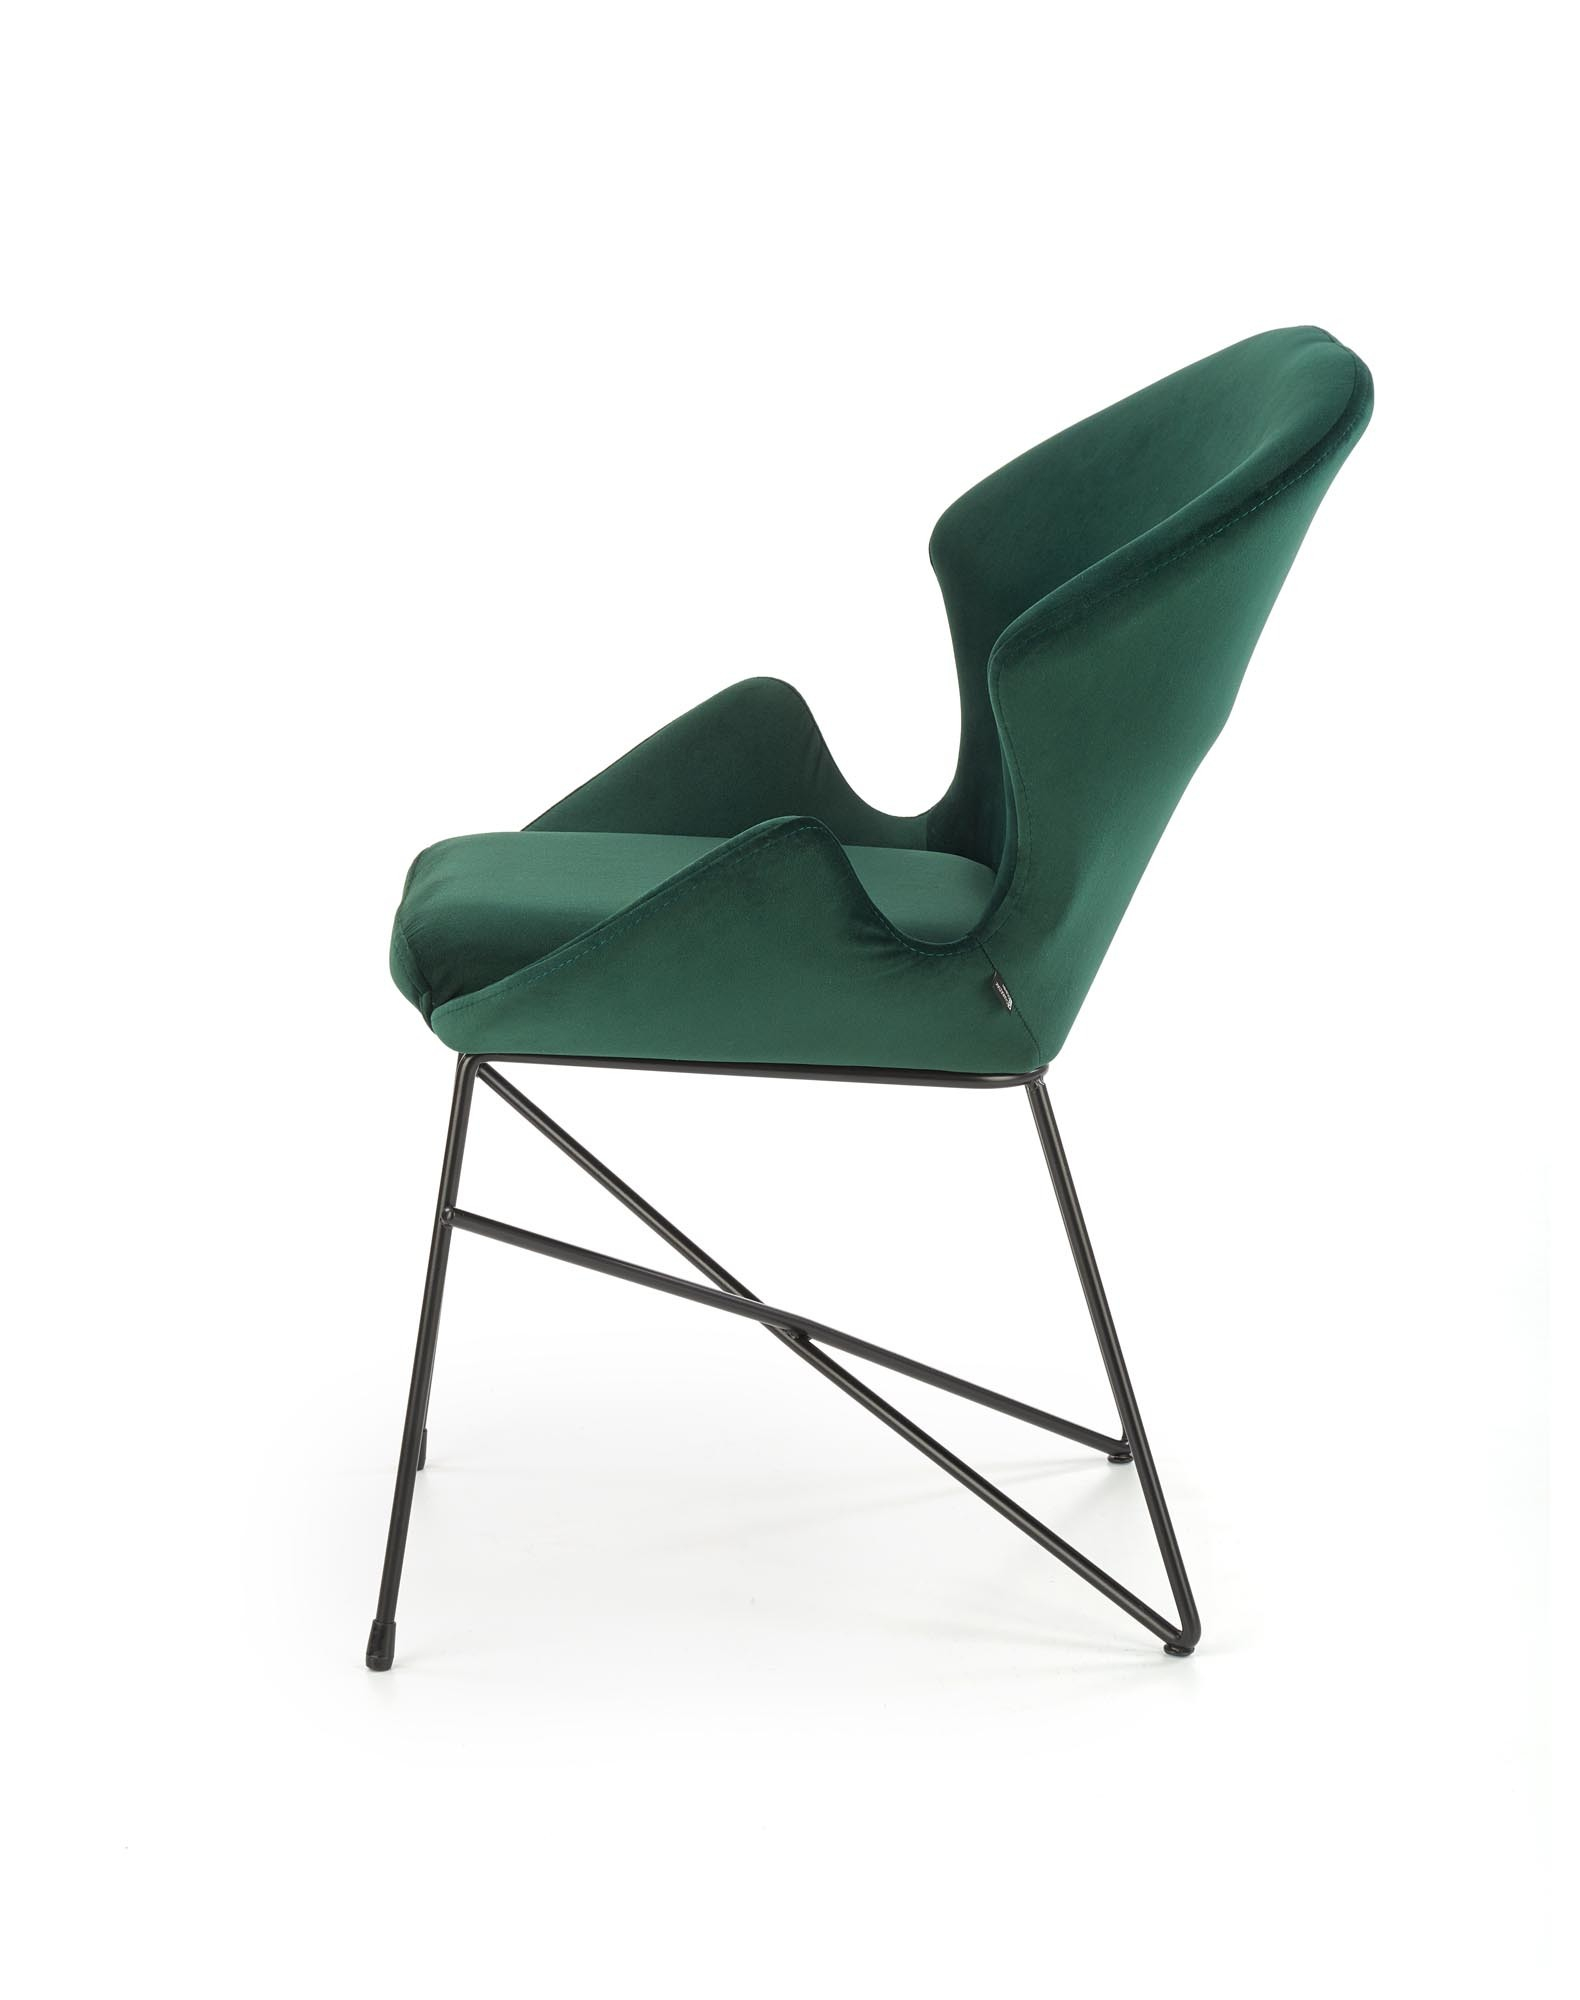 K458 krzesło, kolor: ciemny zielony